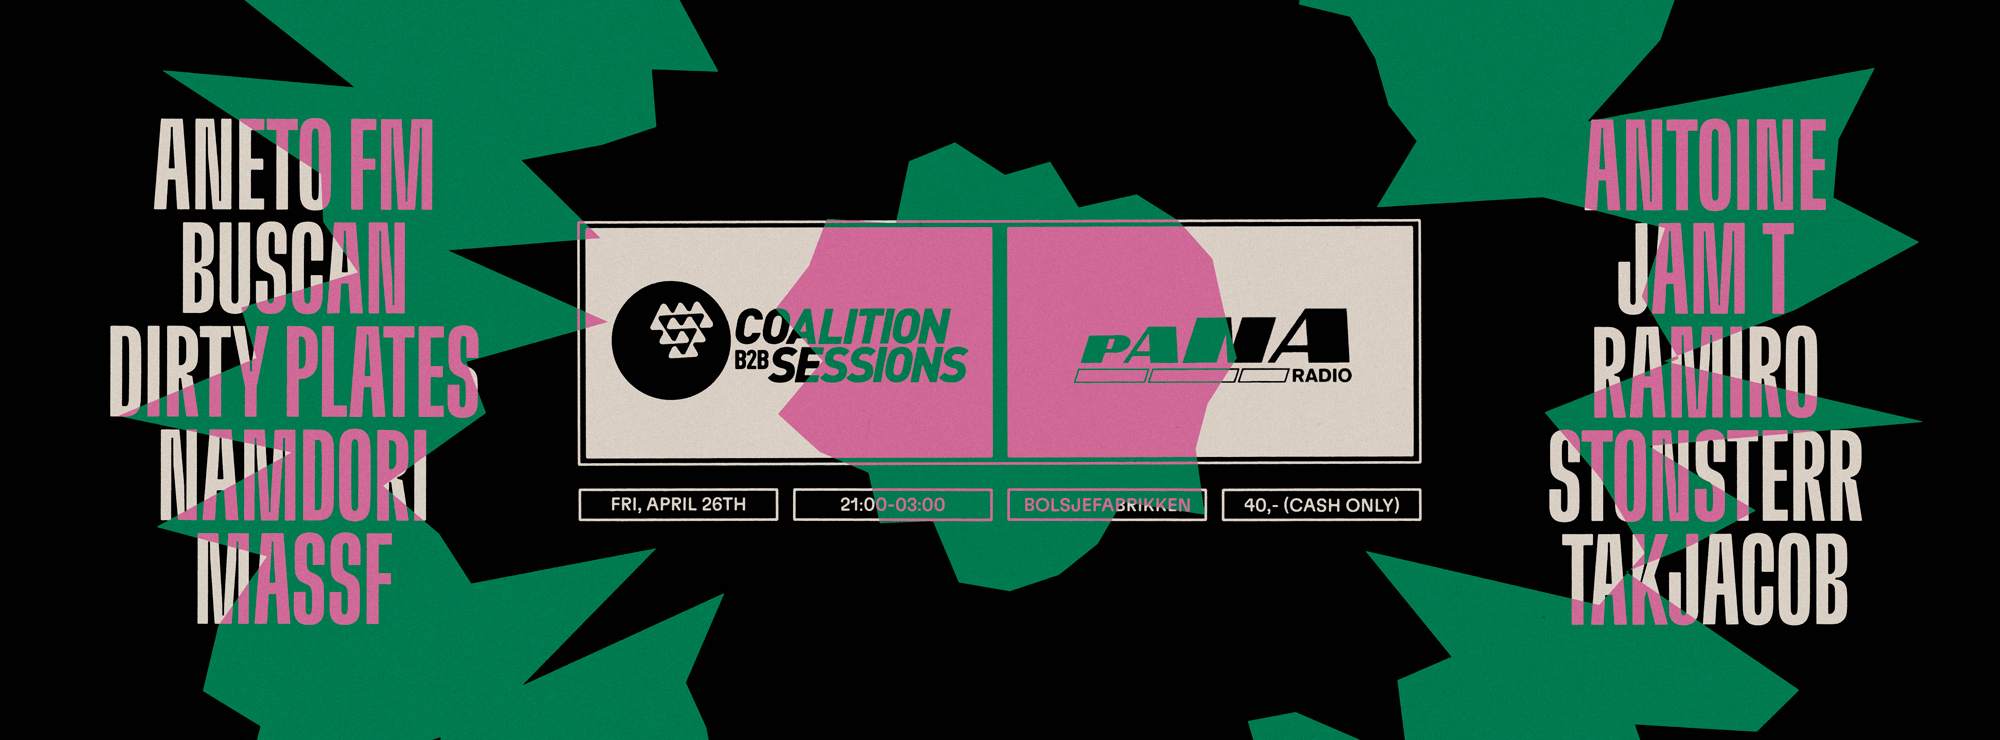 Coalition B2B Sessions X Pana Radio - フライヤー裏